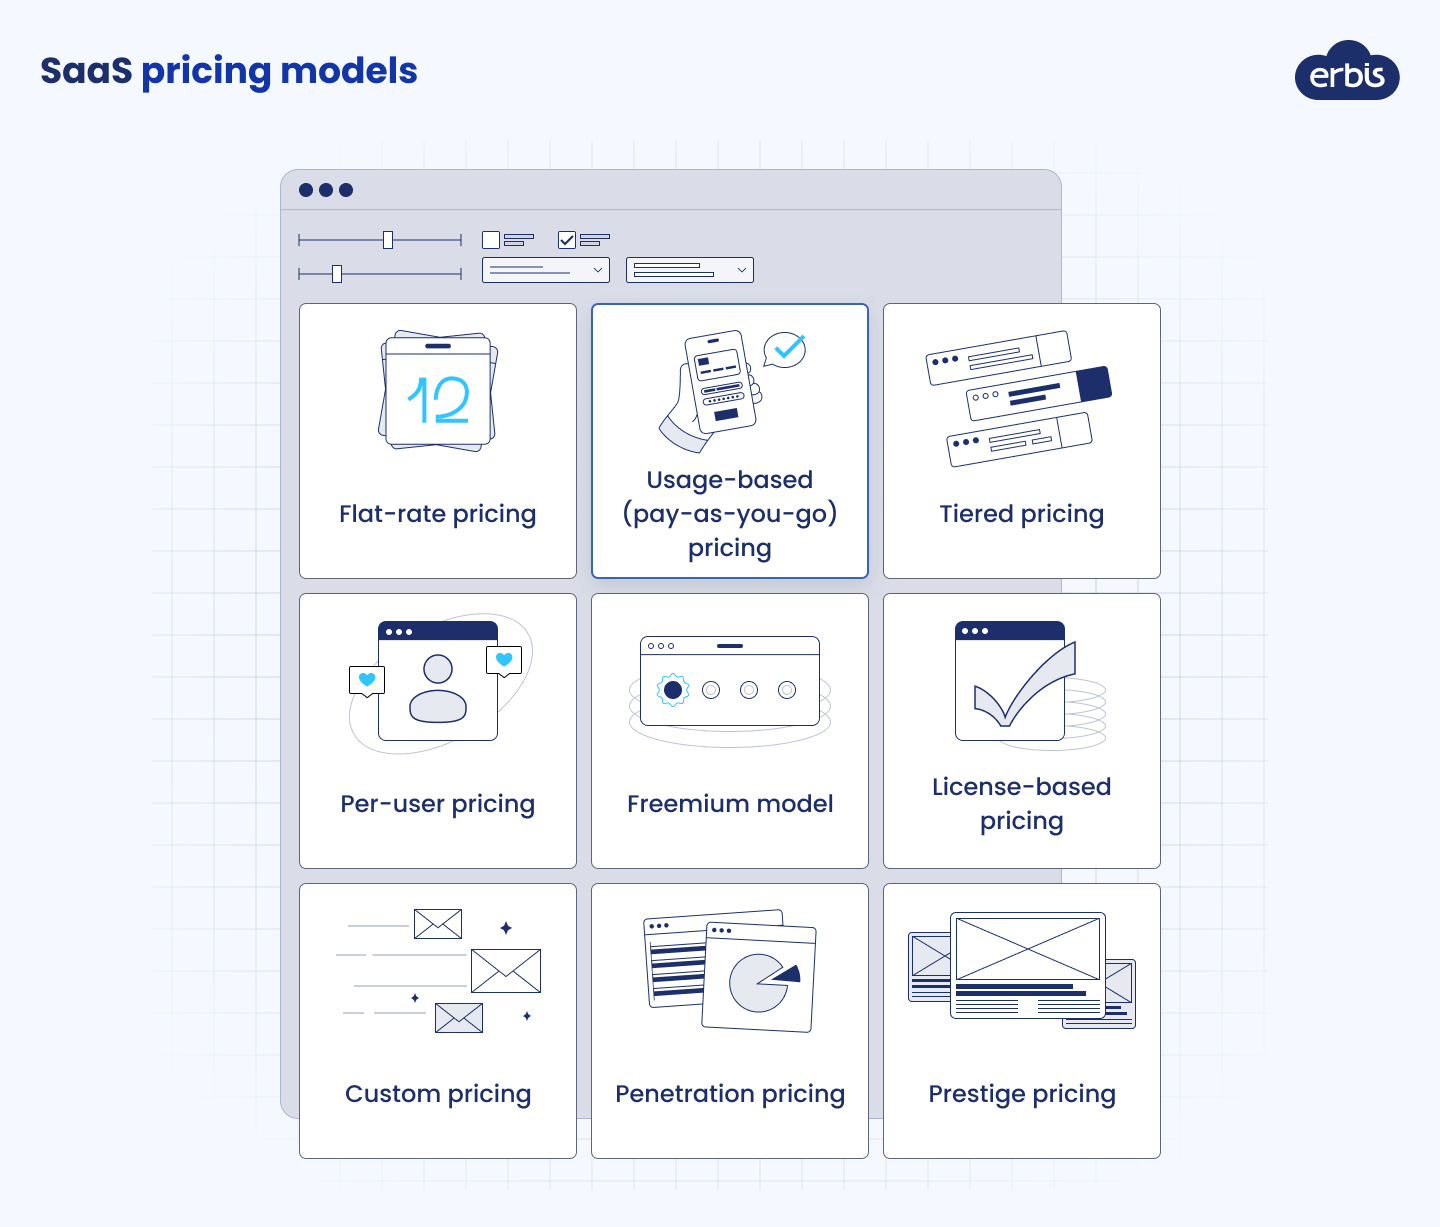 Pricing models in SaaS